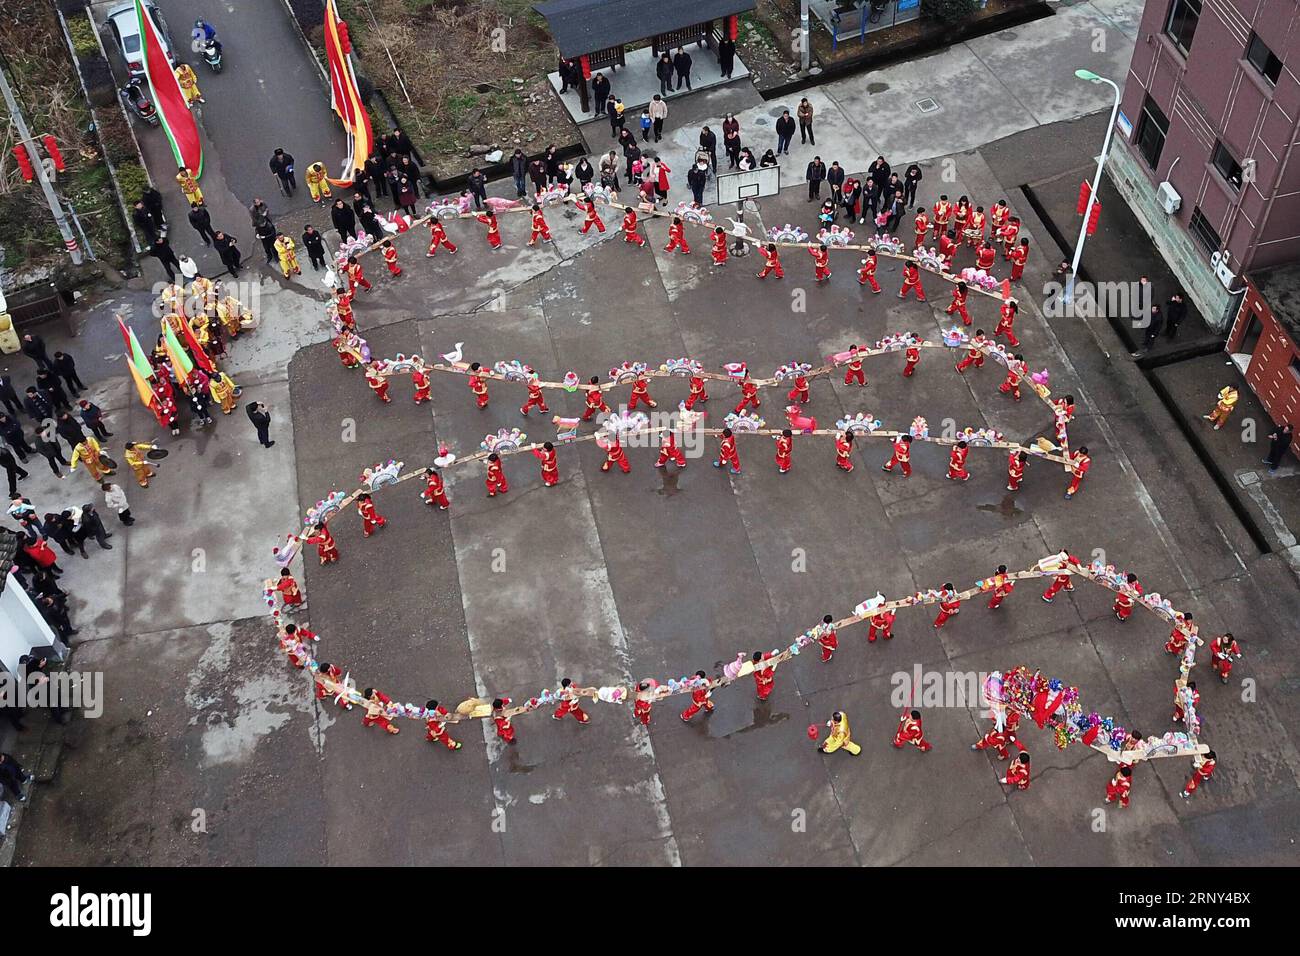 (180226) -- HANGZHOU, 26. Februar 2018 -- Ein Drachenlaternen-Team für Frauen tanzt im Dorf Xinhe, Kreis Tonglu, ostchinesische Provinz Zhejiang, 26. Februar 2018. Die Leistung der Drachenlaterne, die durch bankartige Bretter verbunden ist, ist eine traditionelle Art, den Frühlingsbeginn zu feiern. ) (WYO) CHINA-ZHEJIANG-DRAGON LATERNE TANZ-FRAUEN S TEAM-PERFORMANCE (CN) HUANGXZONGZHI PUBLICATIONXNOTXINXCHN Stockfoto